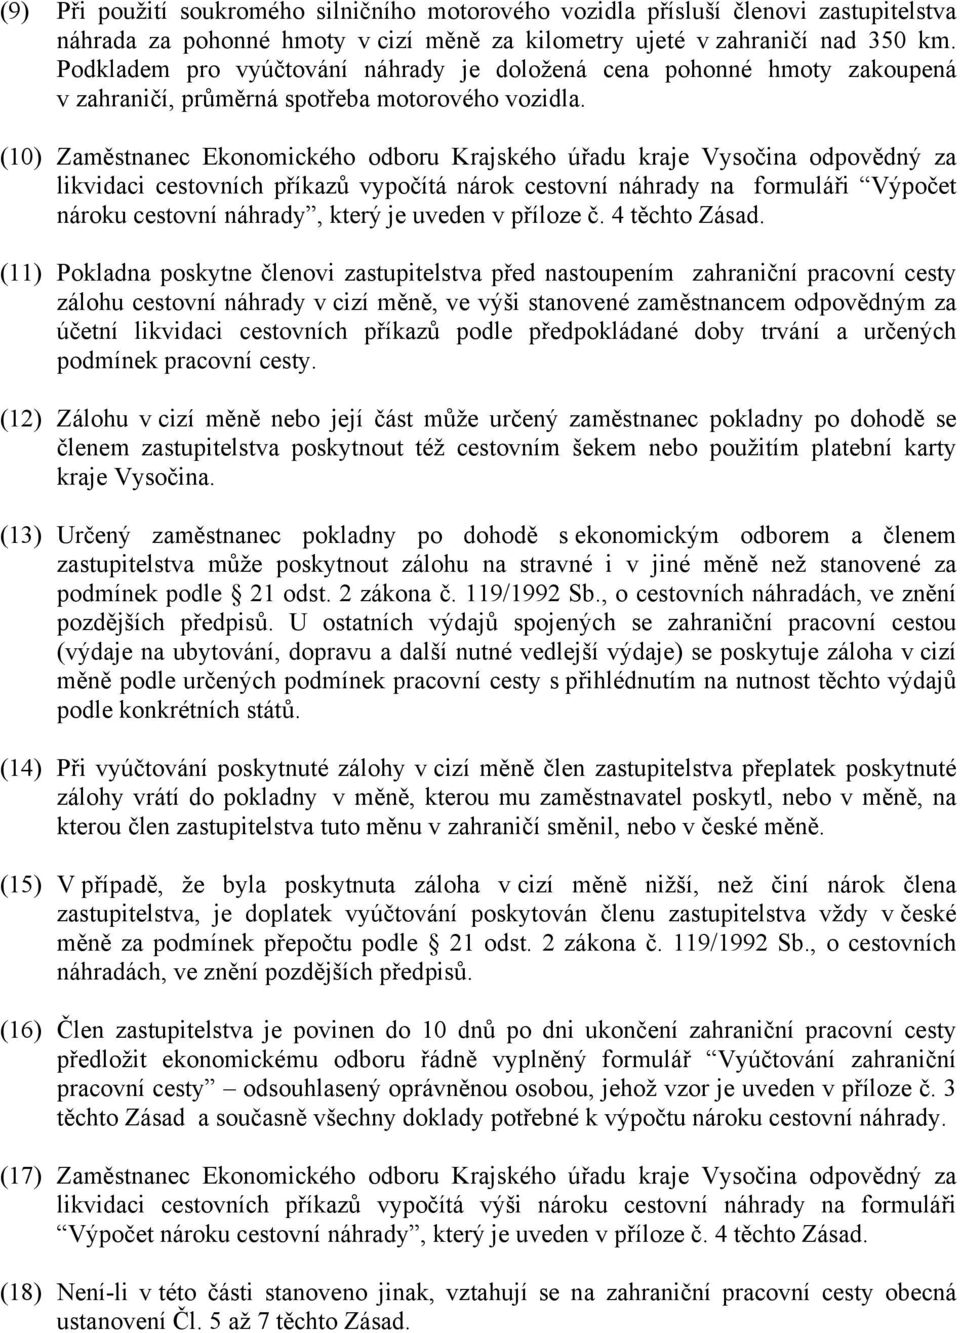 (10) Zaměstnanec Ekonomického odboru Krajského úřadu kraje Vysočina odpovědný za likvidaci cestovních příkazů vypočítá nárok cestovní náhrady na formuláři Výpočet nároku cestovní náhrady, který je